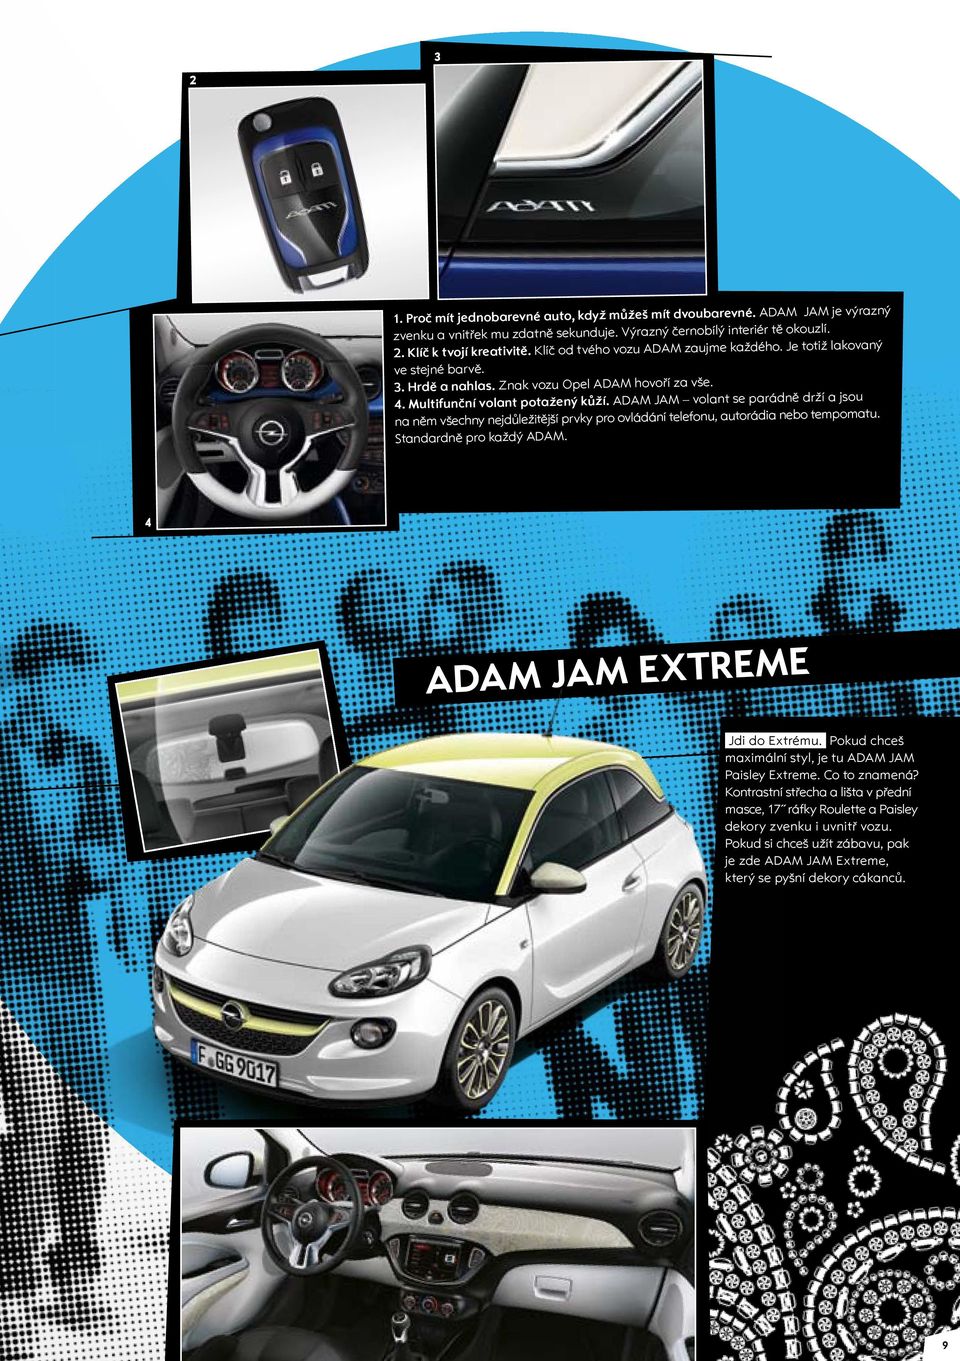 ADAM JAM volant se parádně drží a jsou na něm všechny nejdůležitější prvky pro ovládání telefonu, autorádia nebo tempomatu. Standardně pro každý ADAM. 4 ADAM JAM EXTREME Jdi do Extrému.